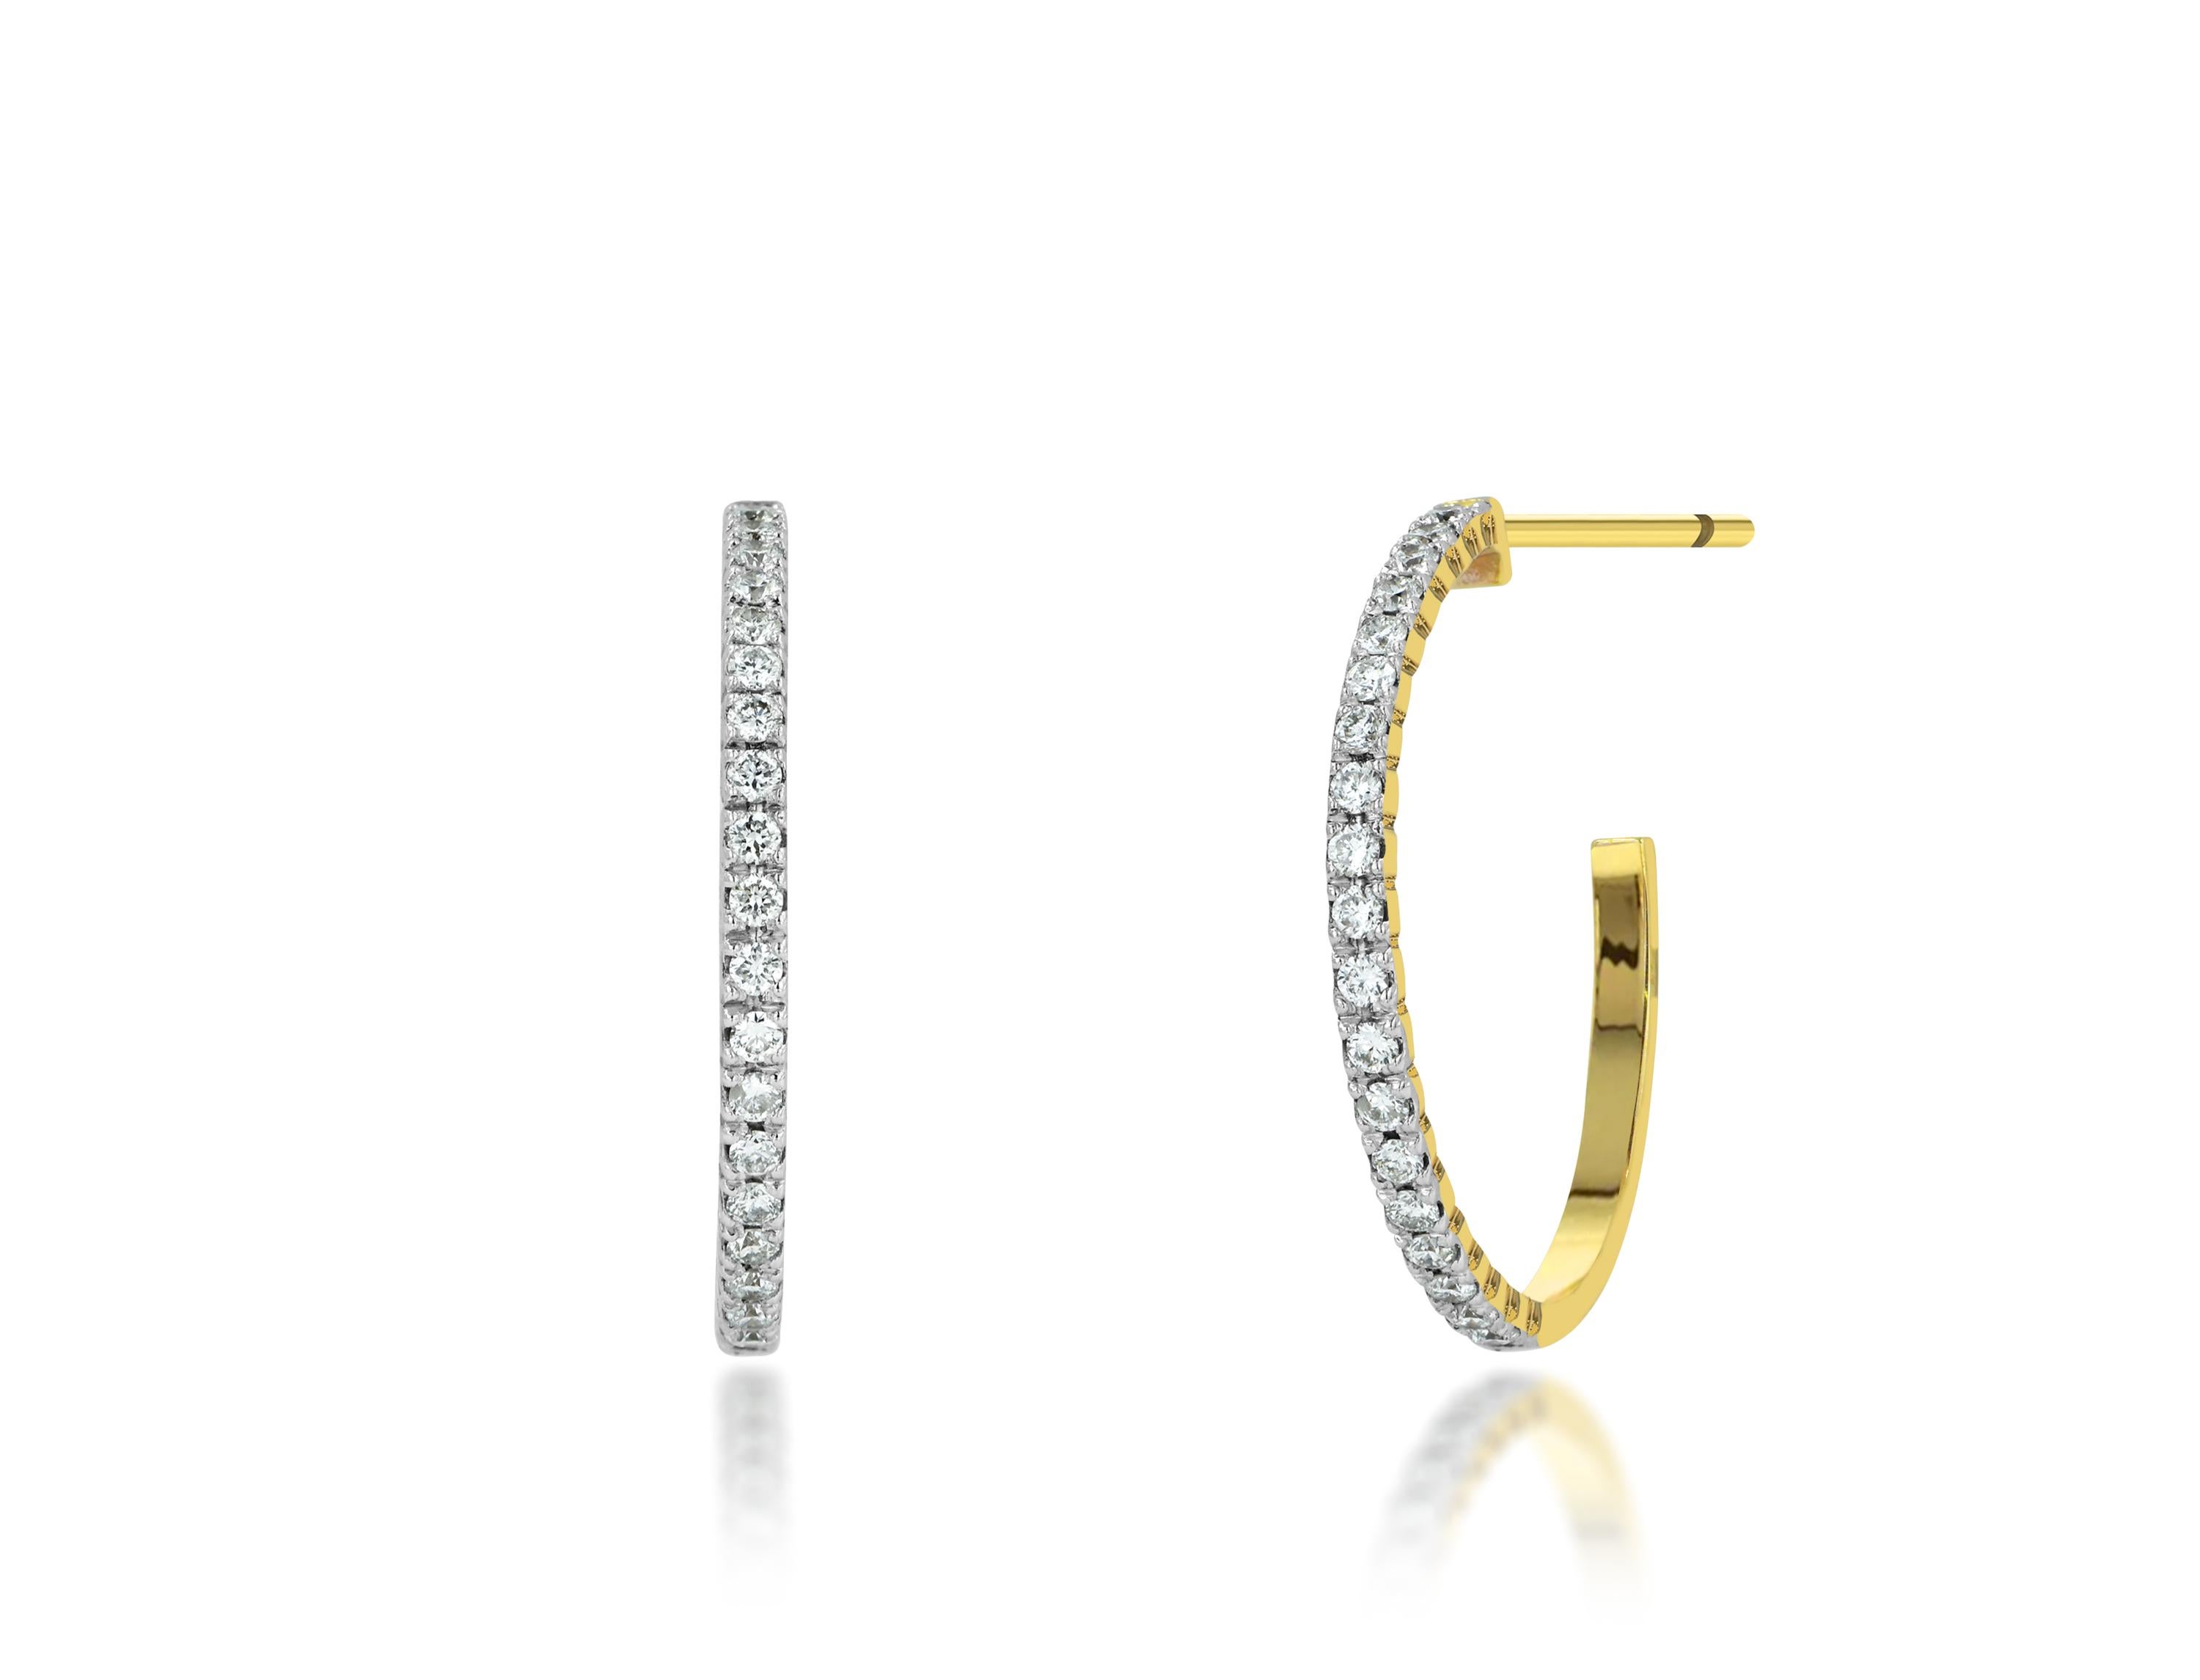 Les boucles d'oreilles en diamant naturel sont fabriquées en or massif 18 carats et sont disponibles en trois couleurs d'or : or rose, or jaune et or blanc.

Parfaites pour être portées à tout moment ou au quotidien, elles iront avec tout. Une paire